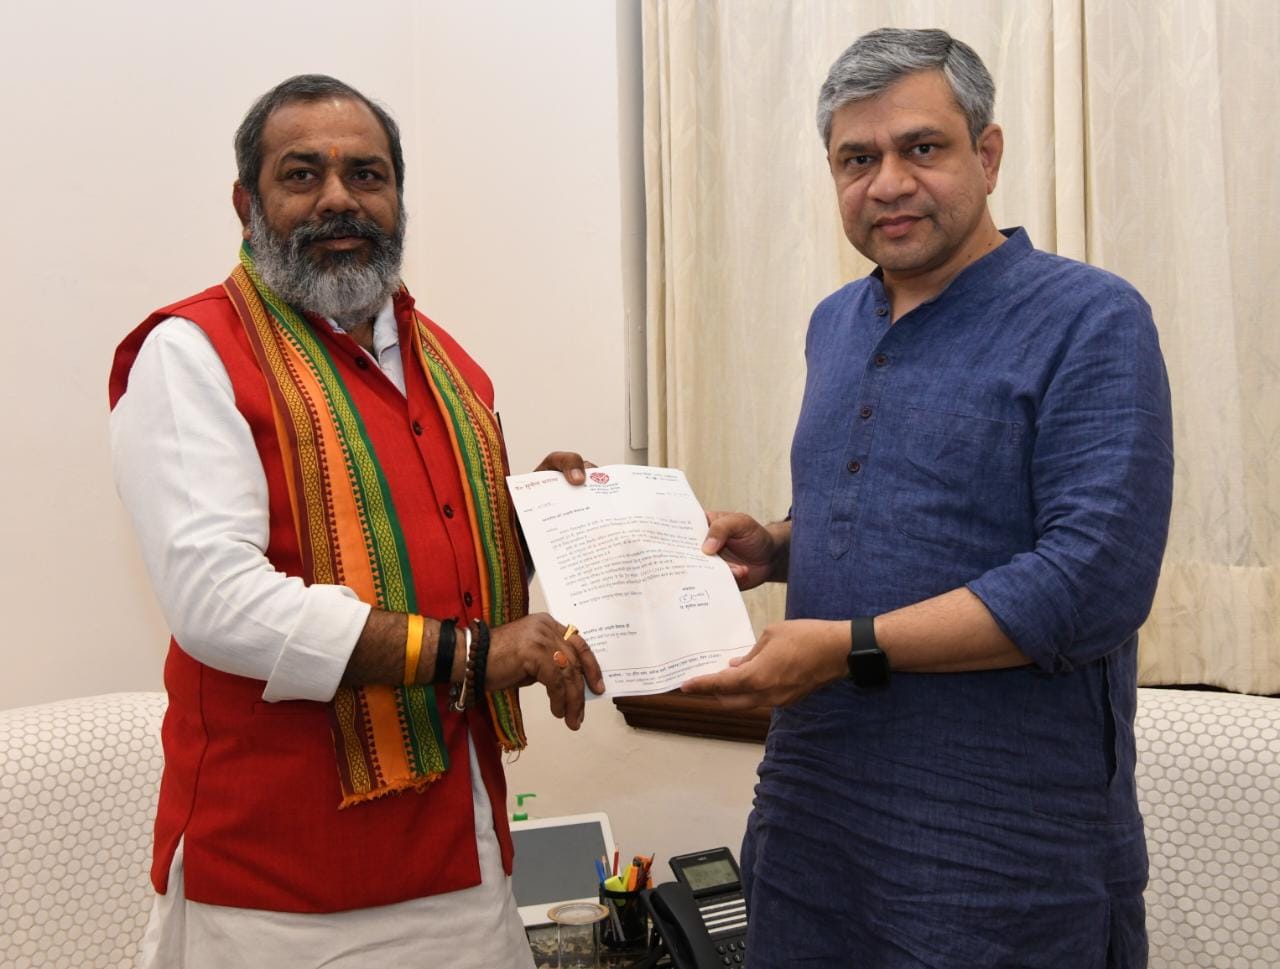 केन्द्रीय रेल मंत्री द्वारा भगवान परशुराम जी पर डाक टिकट जारी करना समस्त सनातन हिंदुओं के लिए अभूतपूर्व कार्य : पंडित सुनील भराला